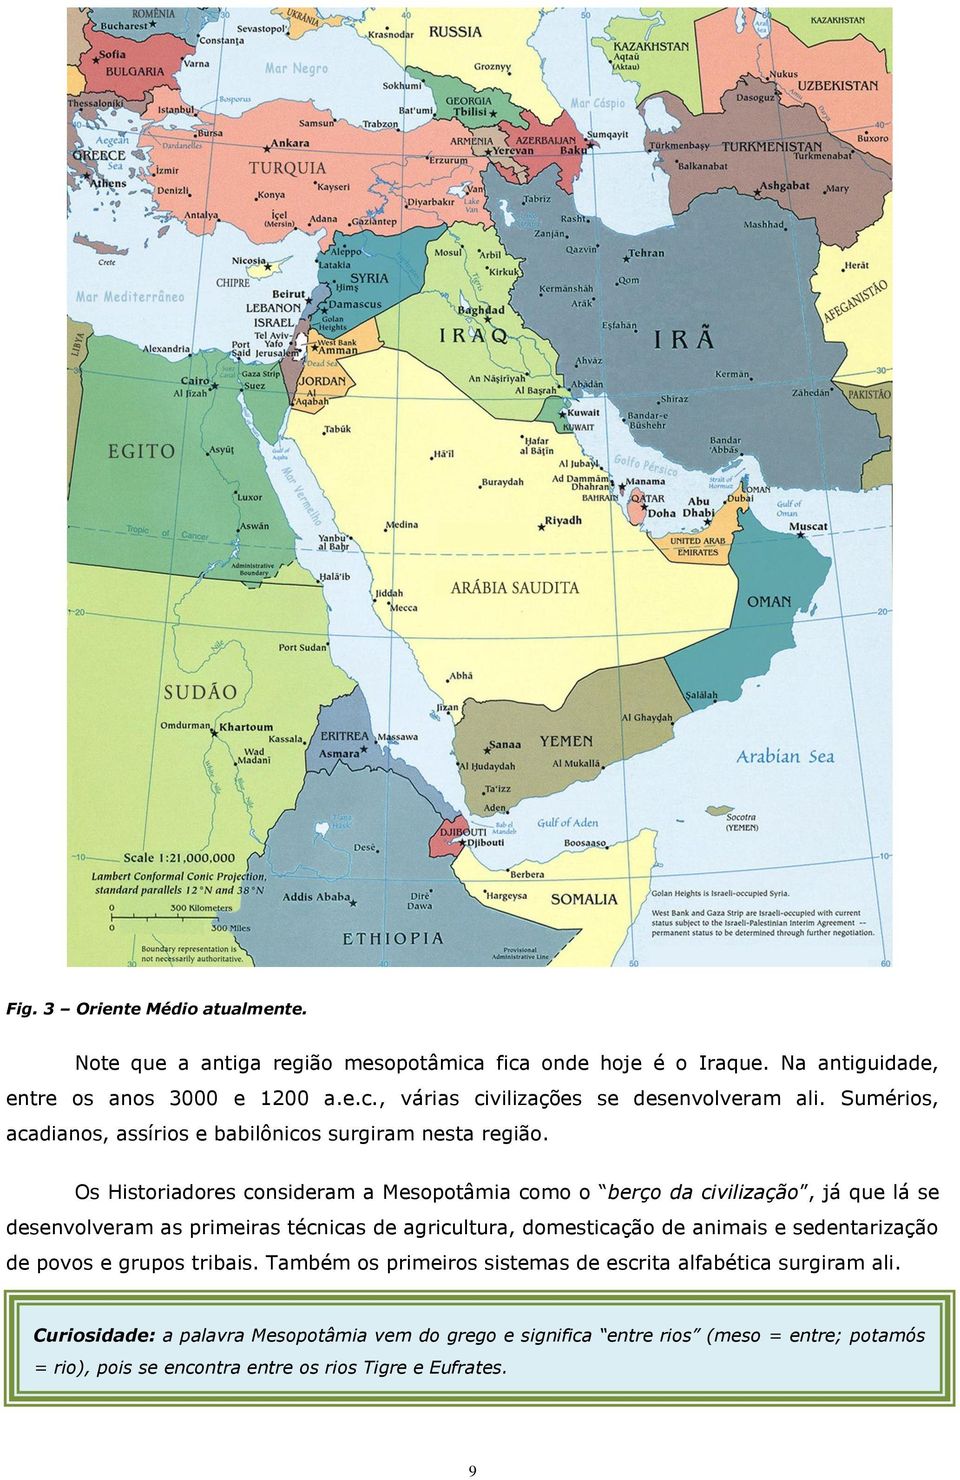 Os Historiadores consideram a Mesopotâmia como o berço da civilização, já que lá se desenvolveram as primeiras técnicas de agricultura, domesticação de animais e